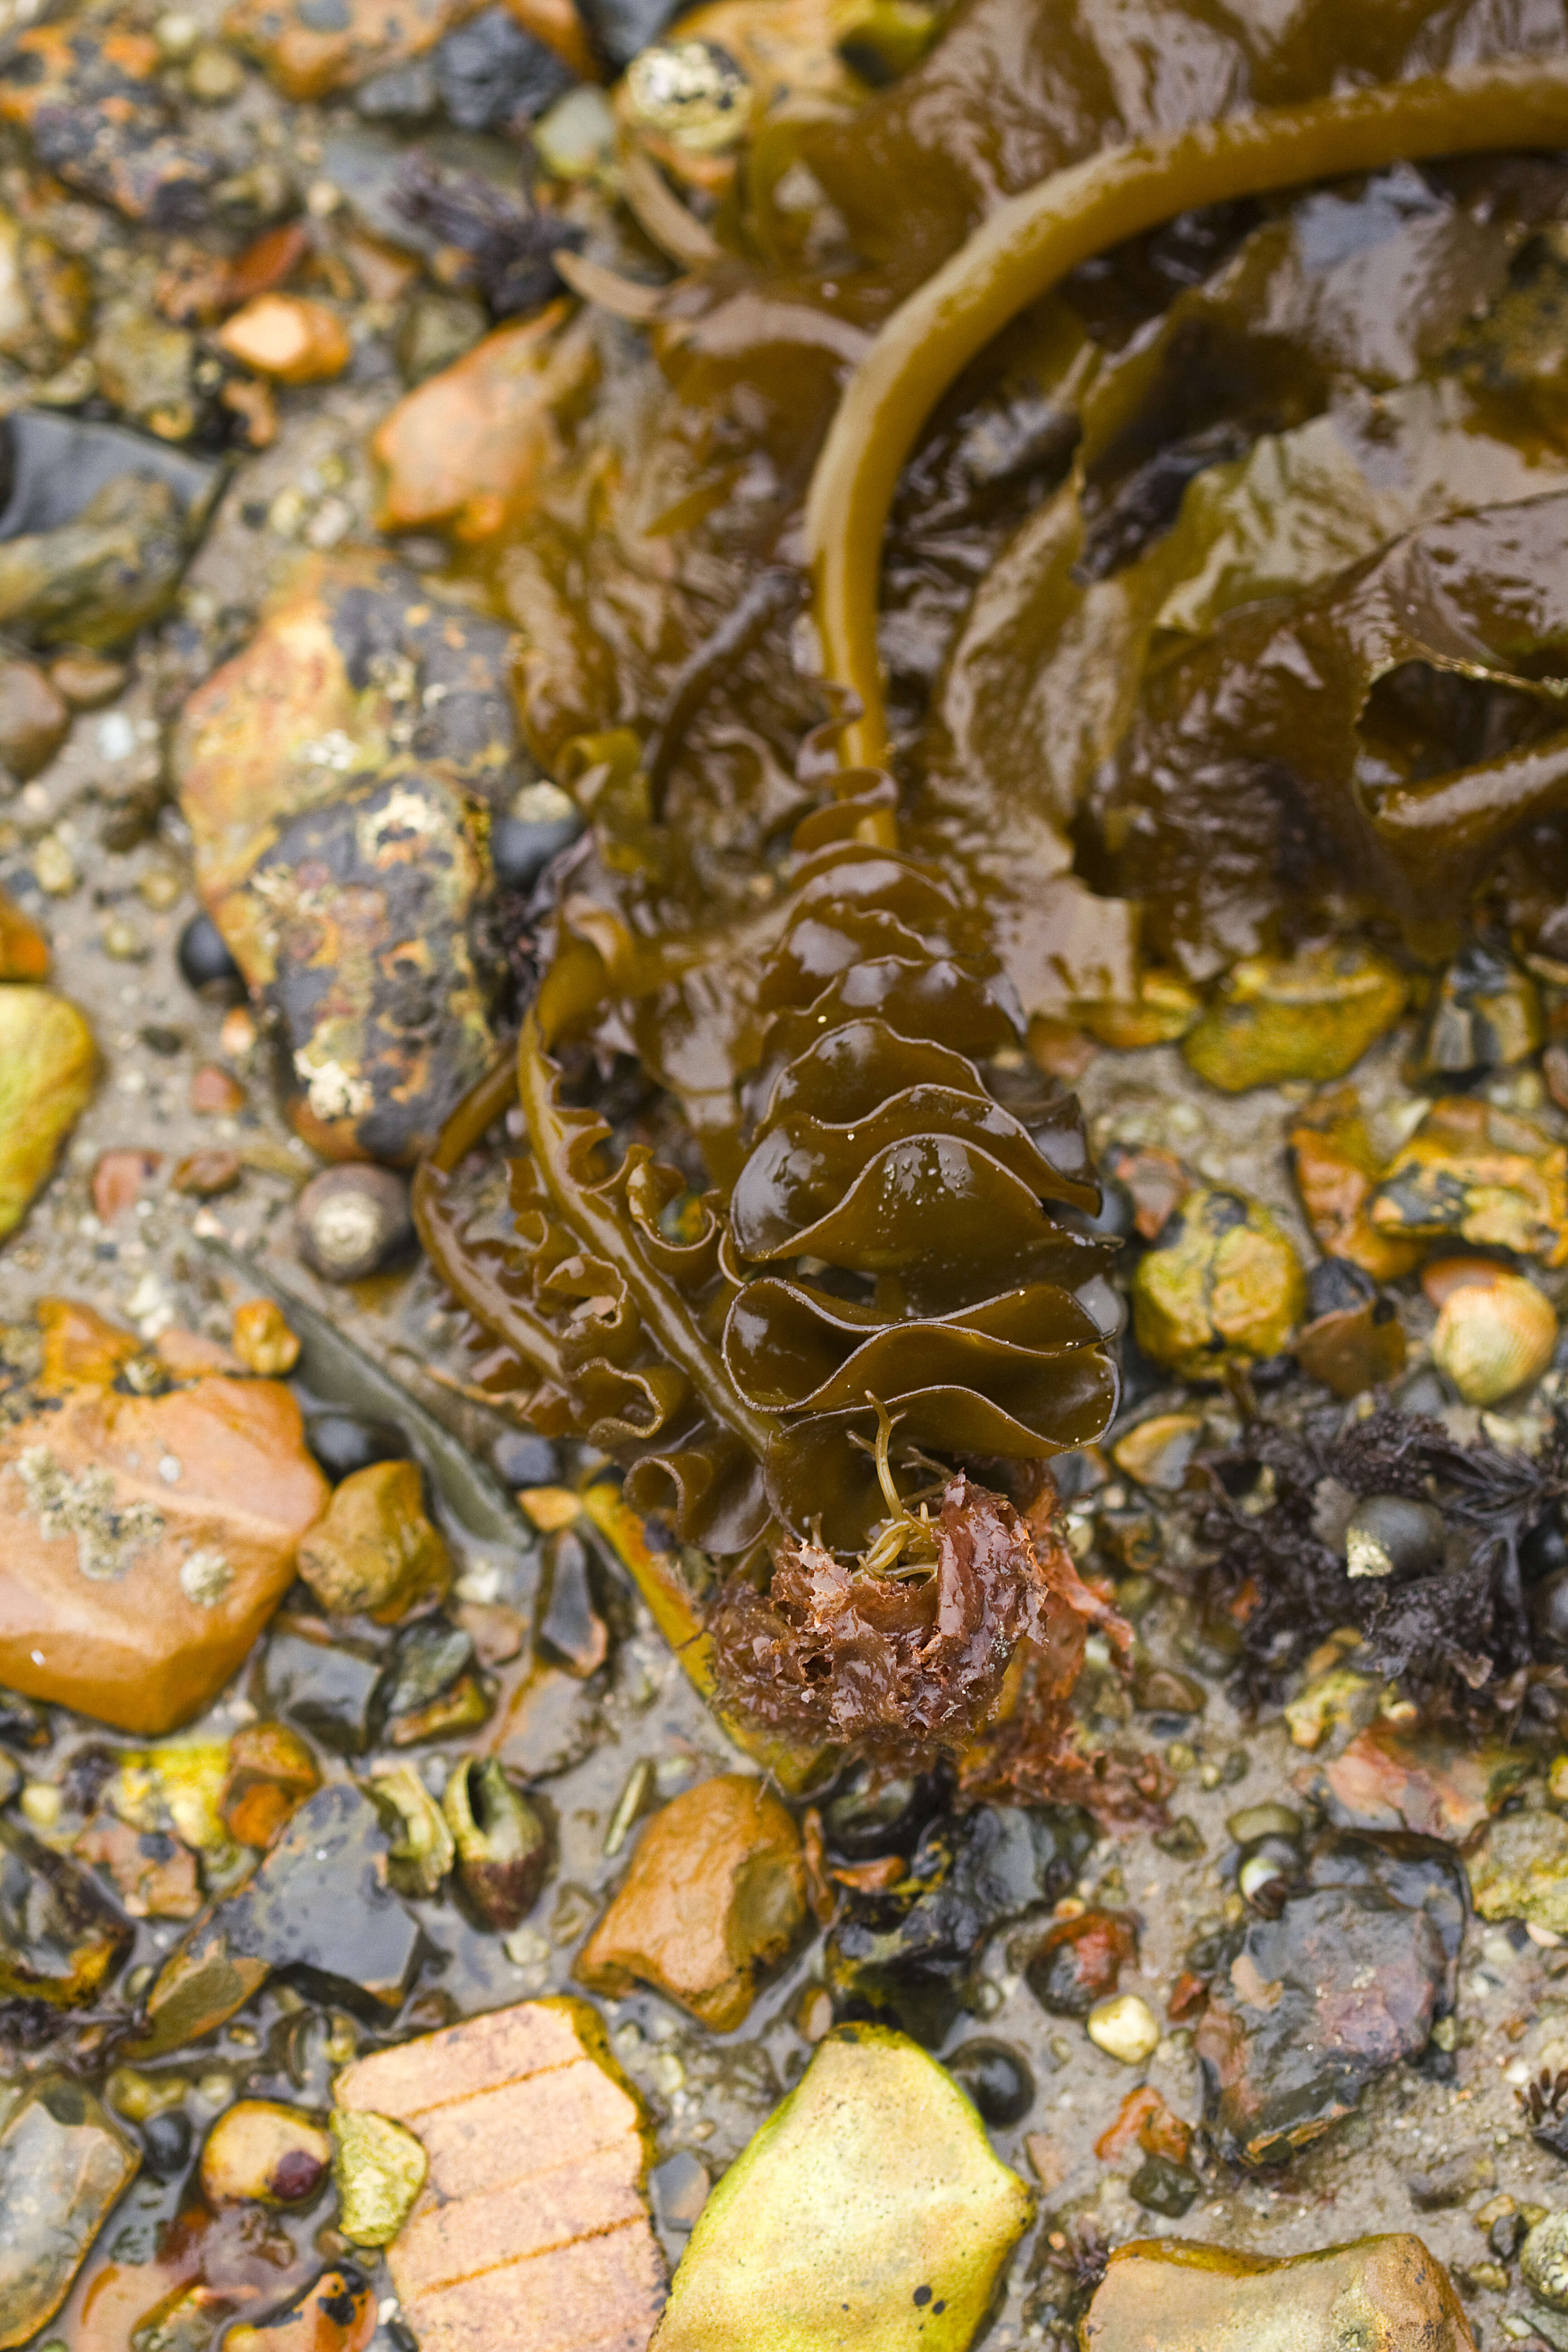 Image of kelp